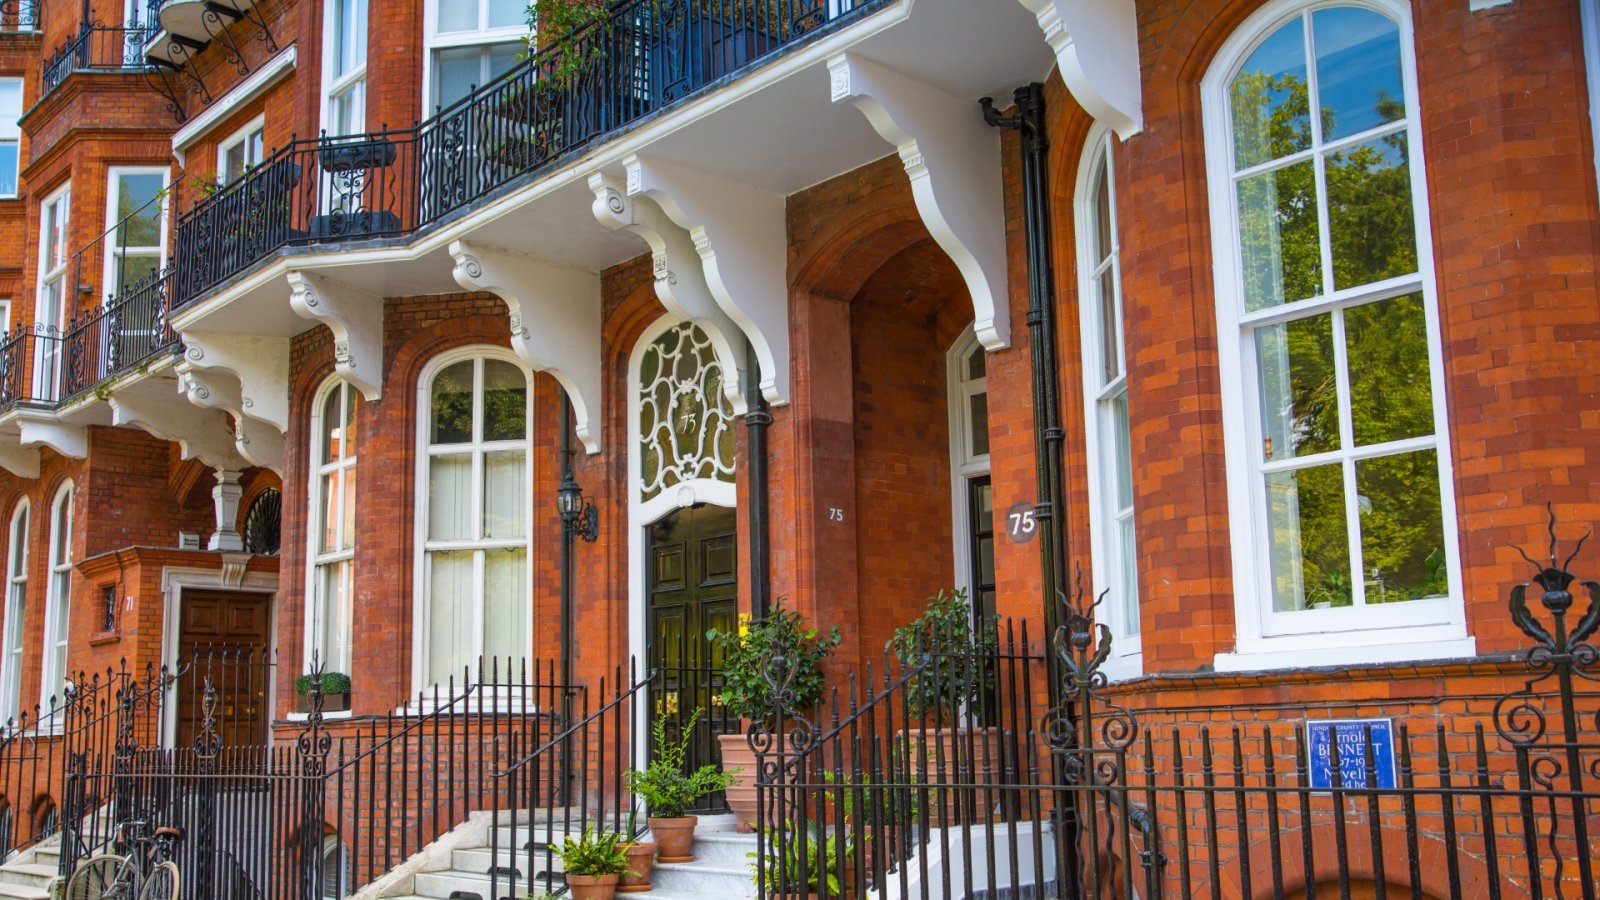 Descubra esta encantadora e luxuosa mansão de tijolos do século XIX em Londres